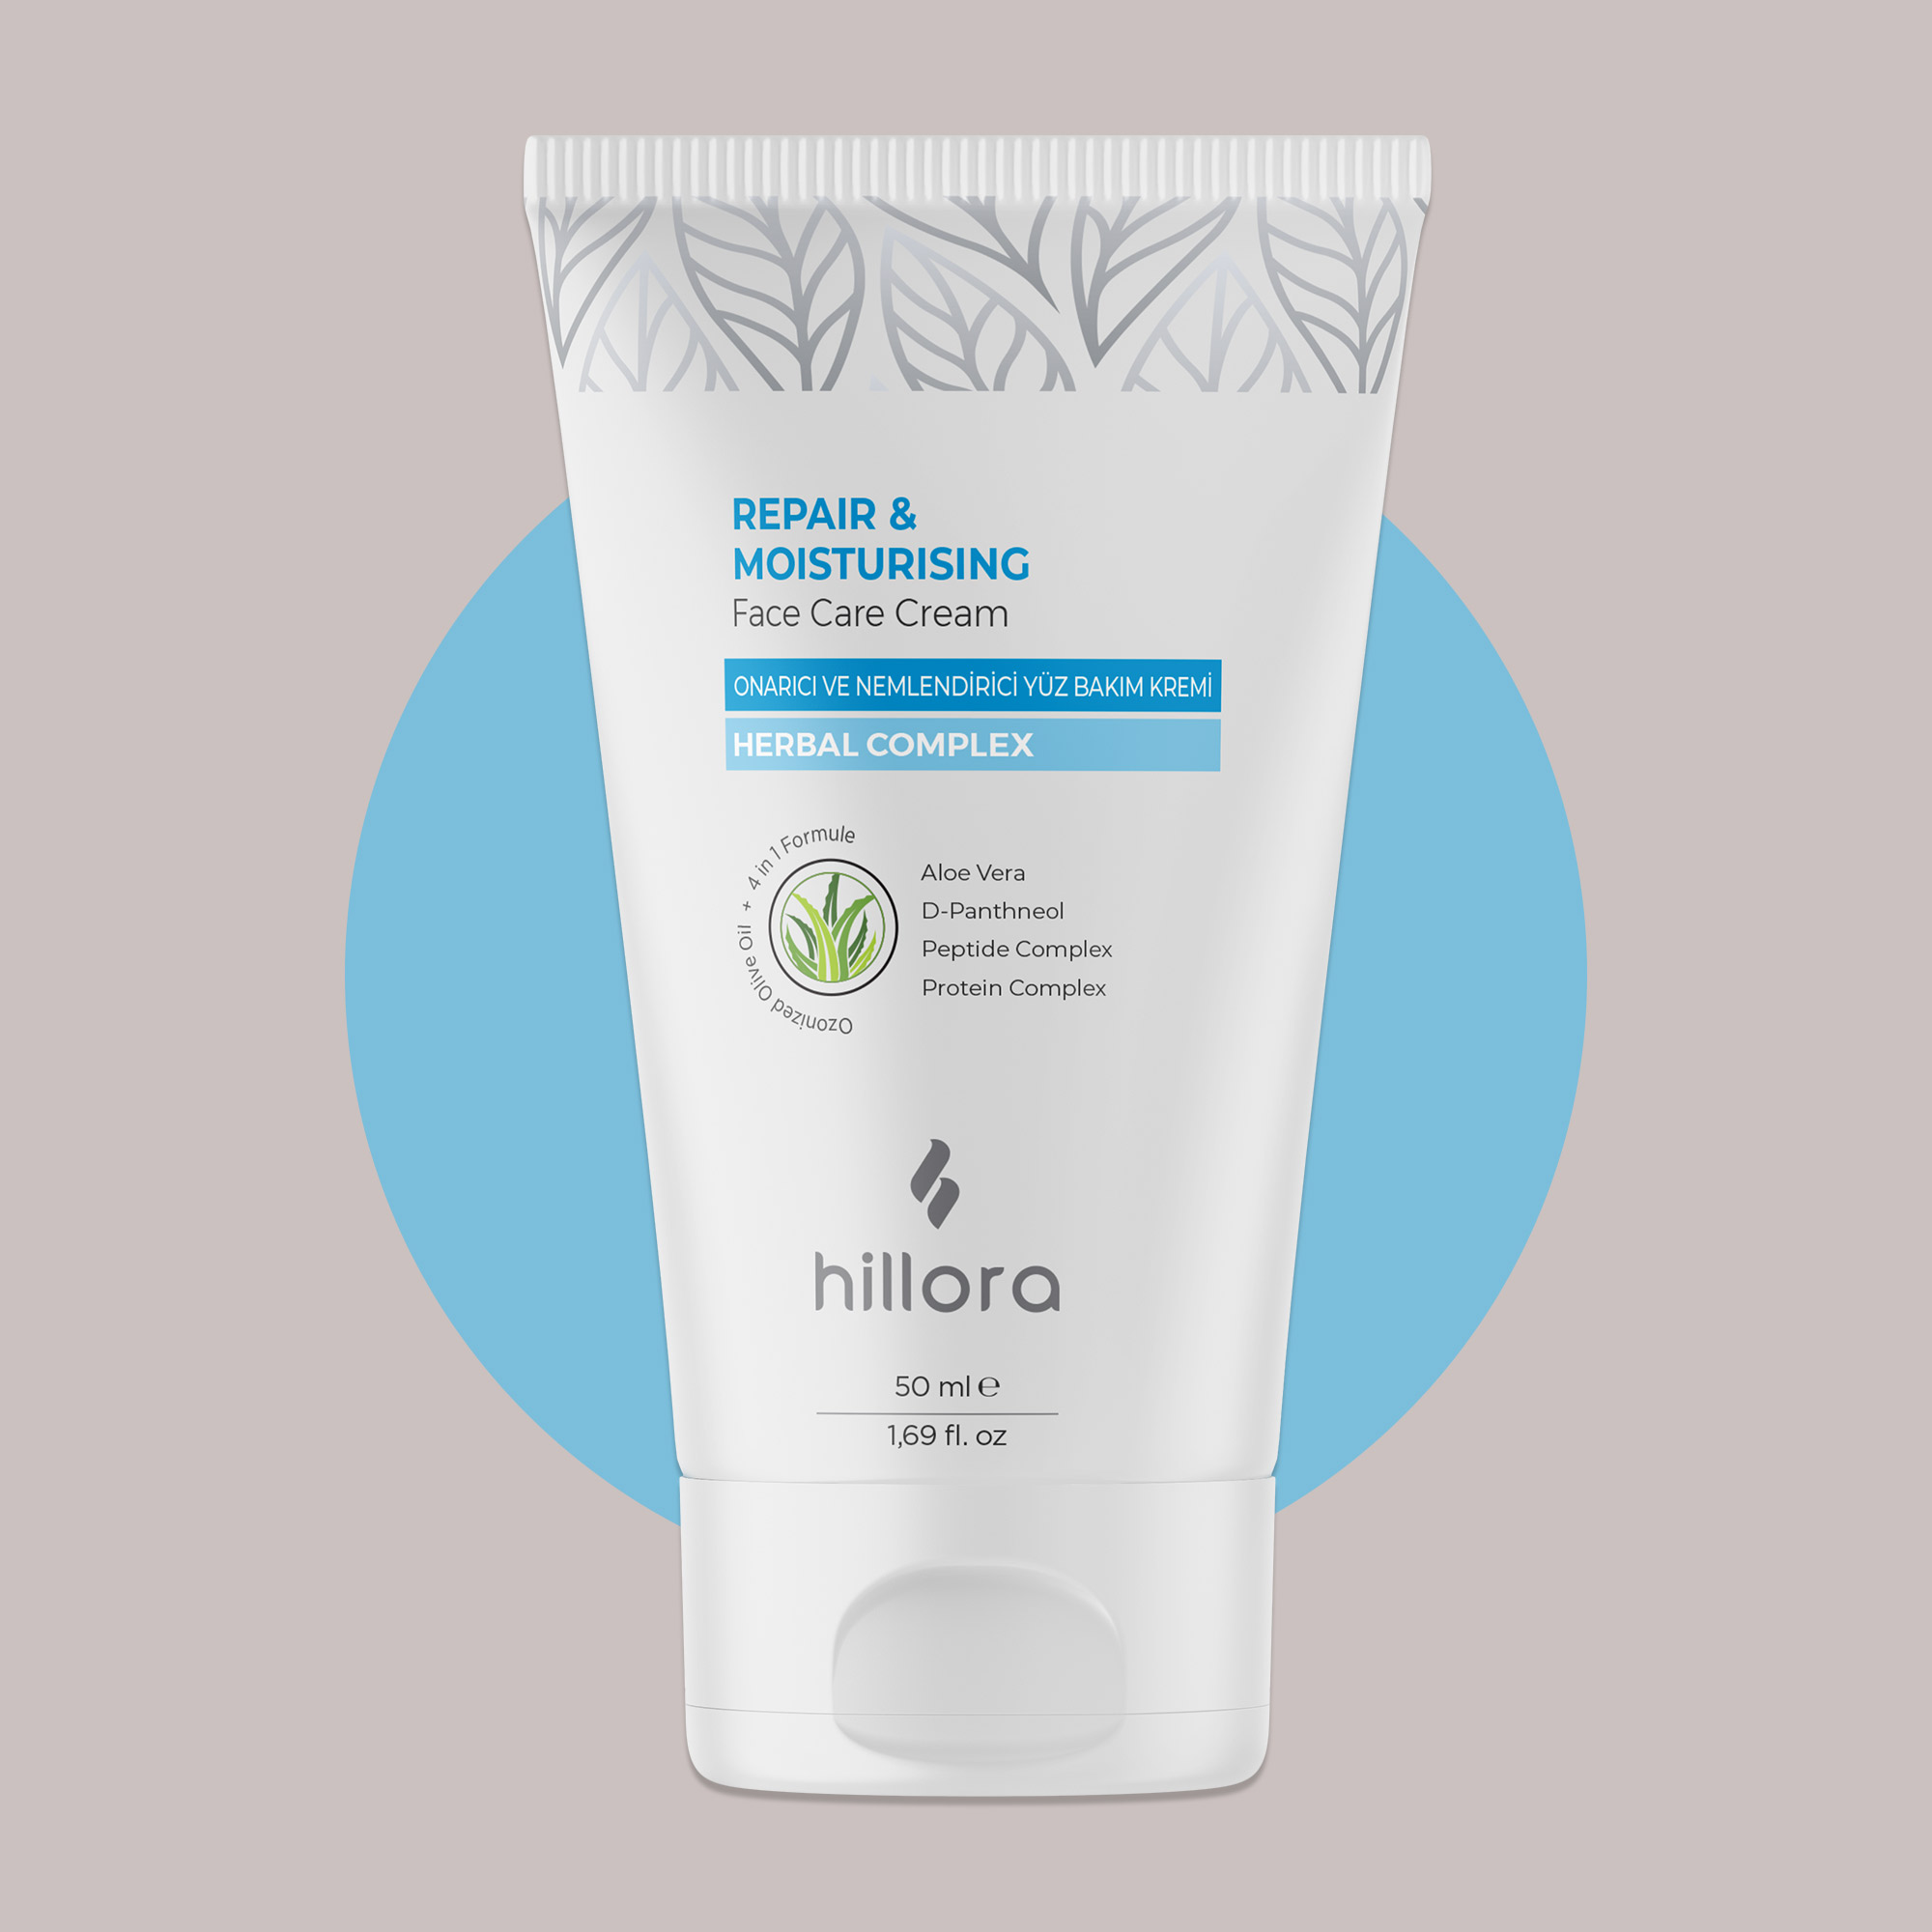 Hillora Repair & Moisturising Face Care Cream